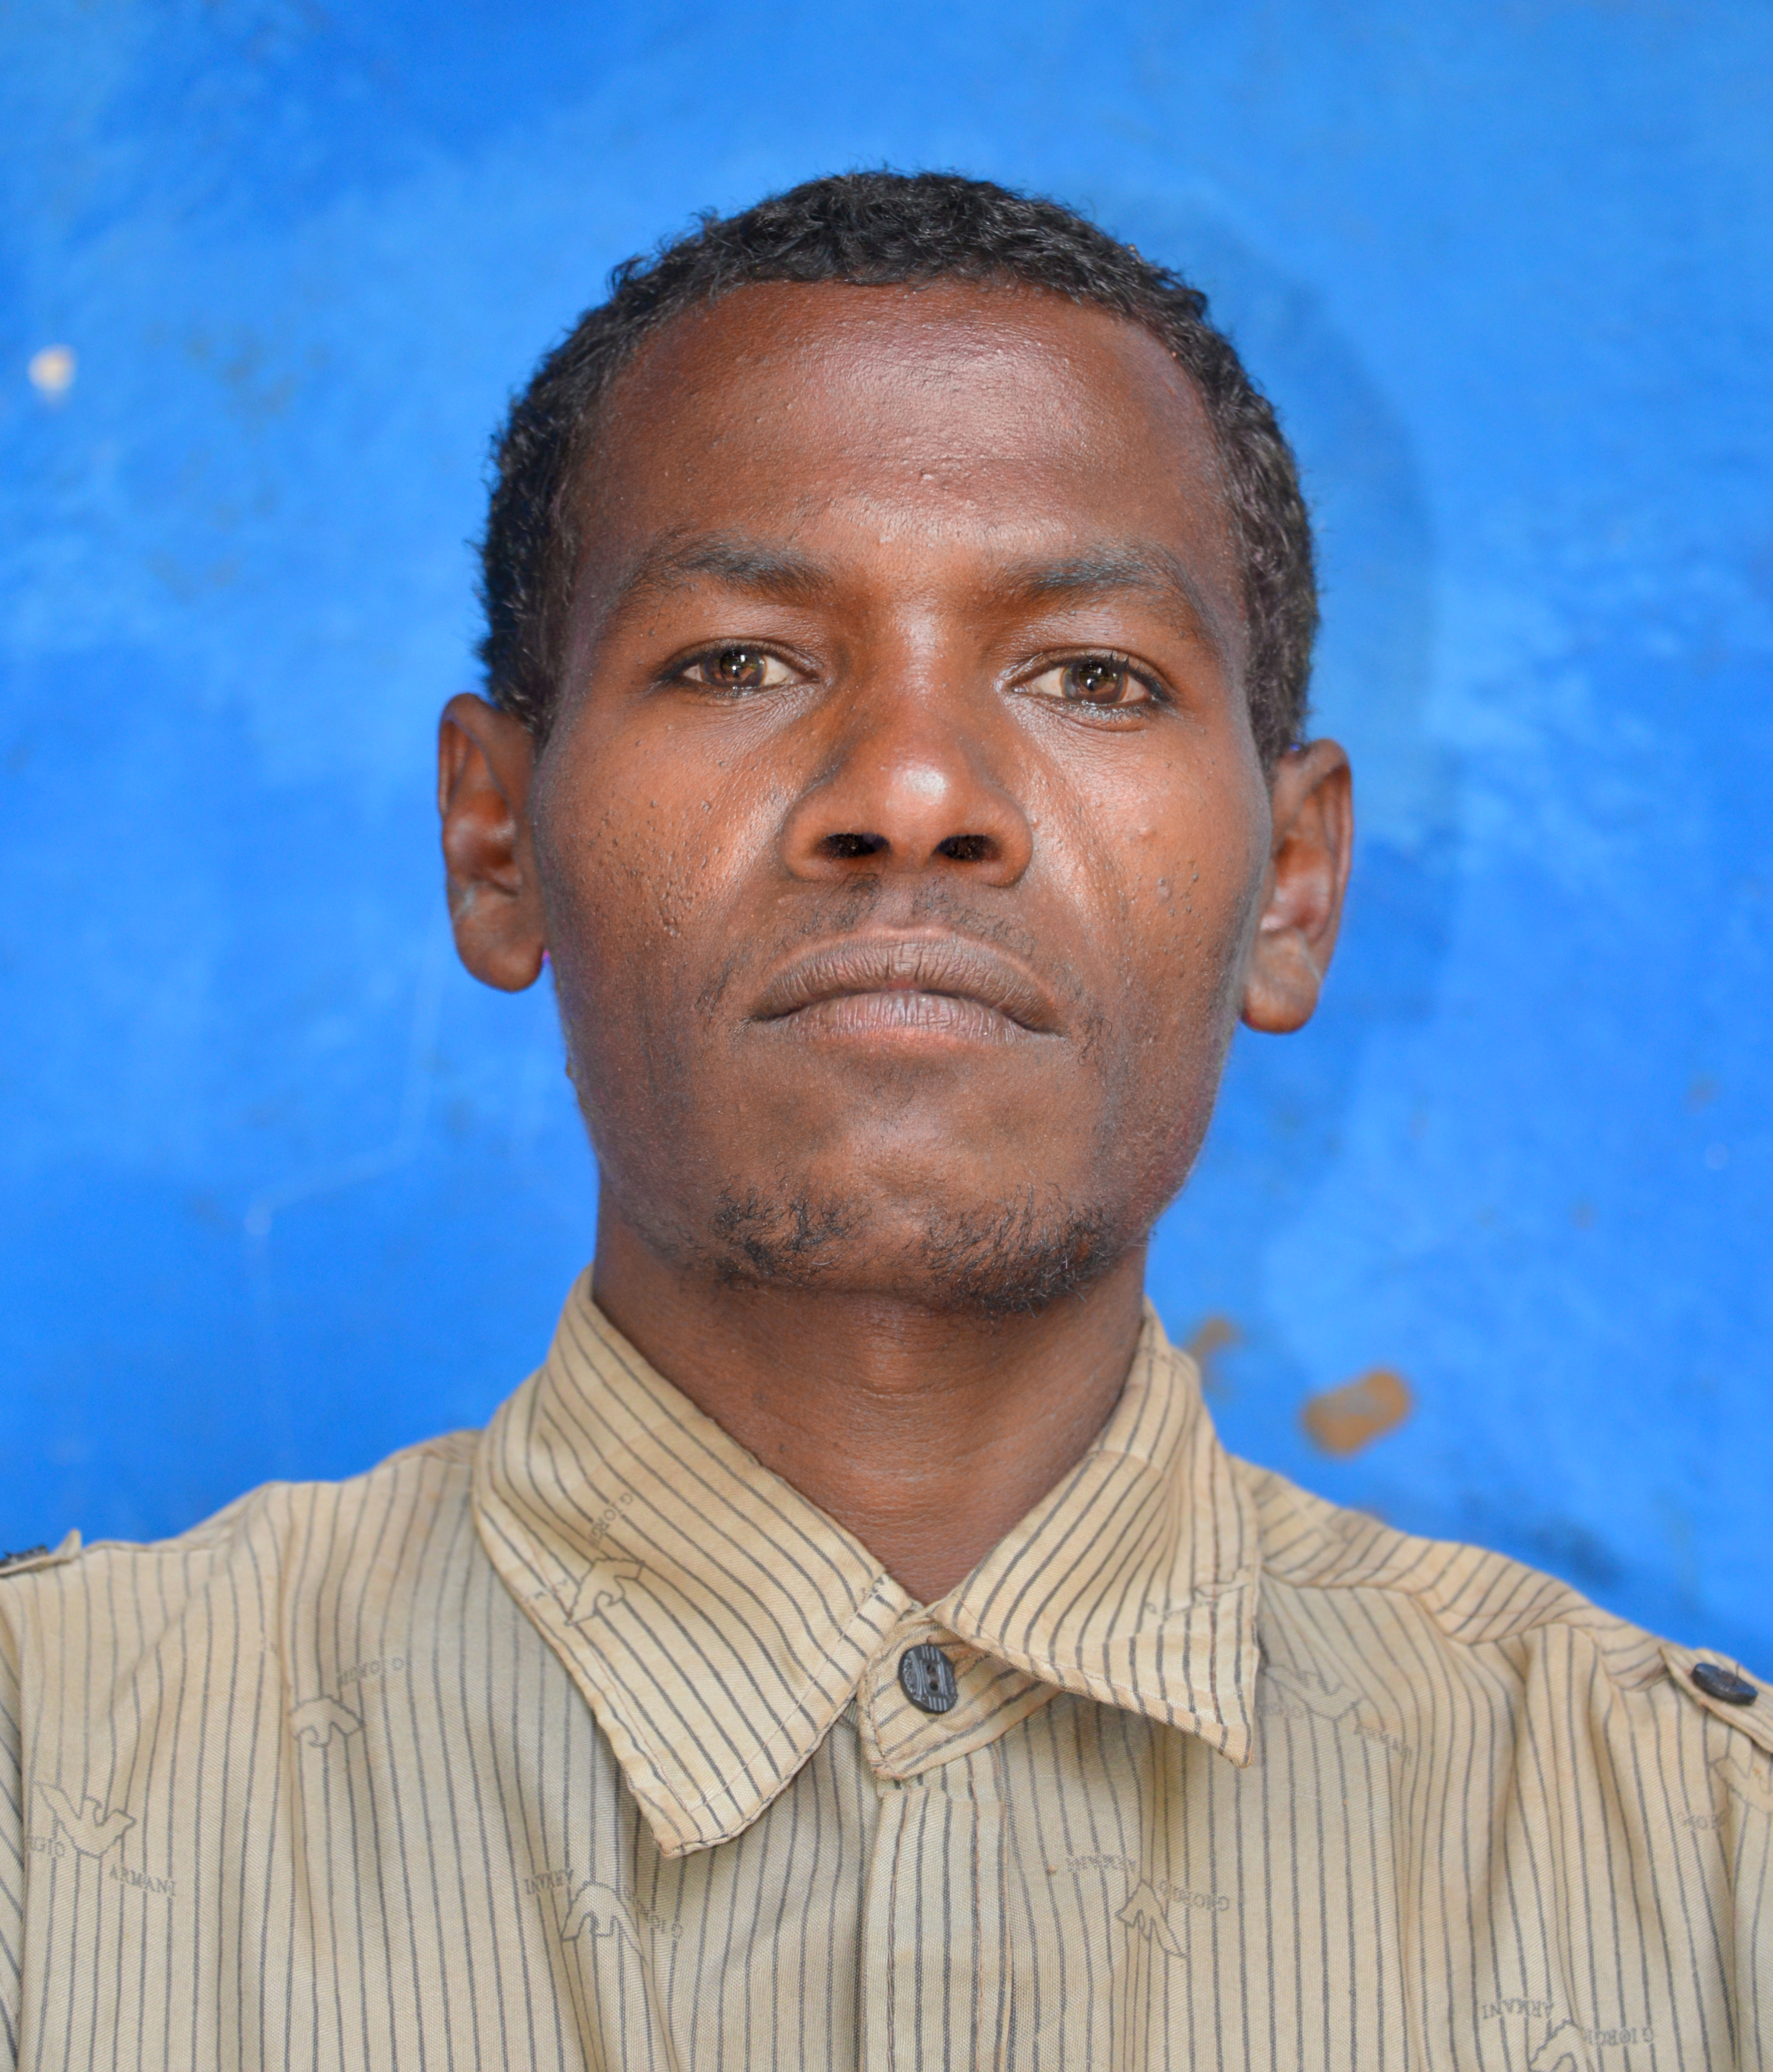 Farmer, Wollaita, Ethiopia (15714559095)